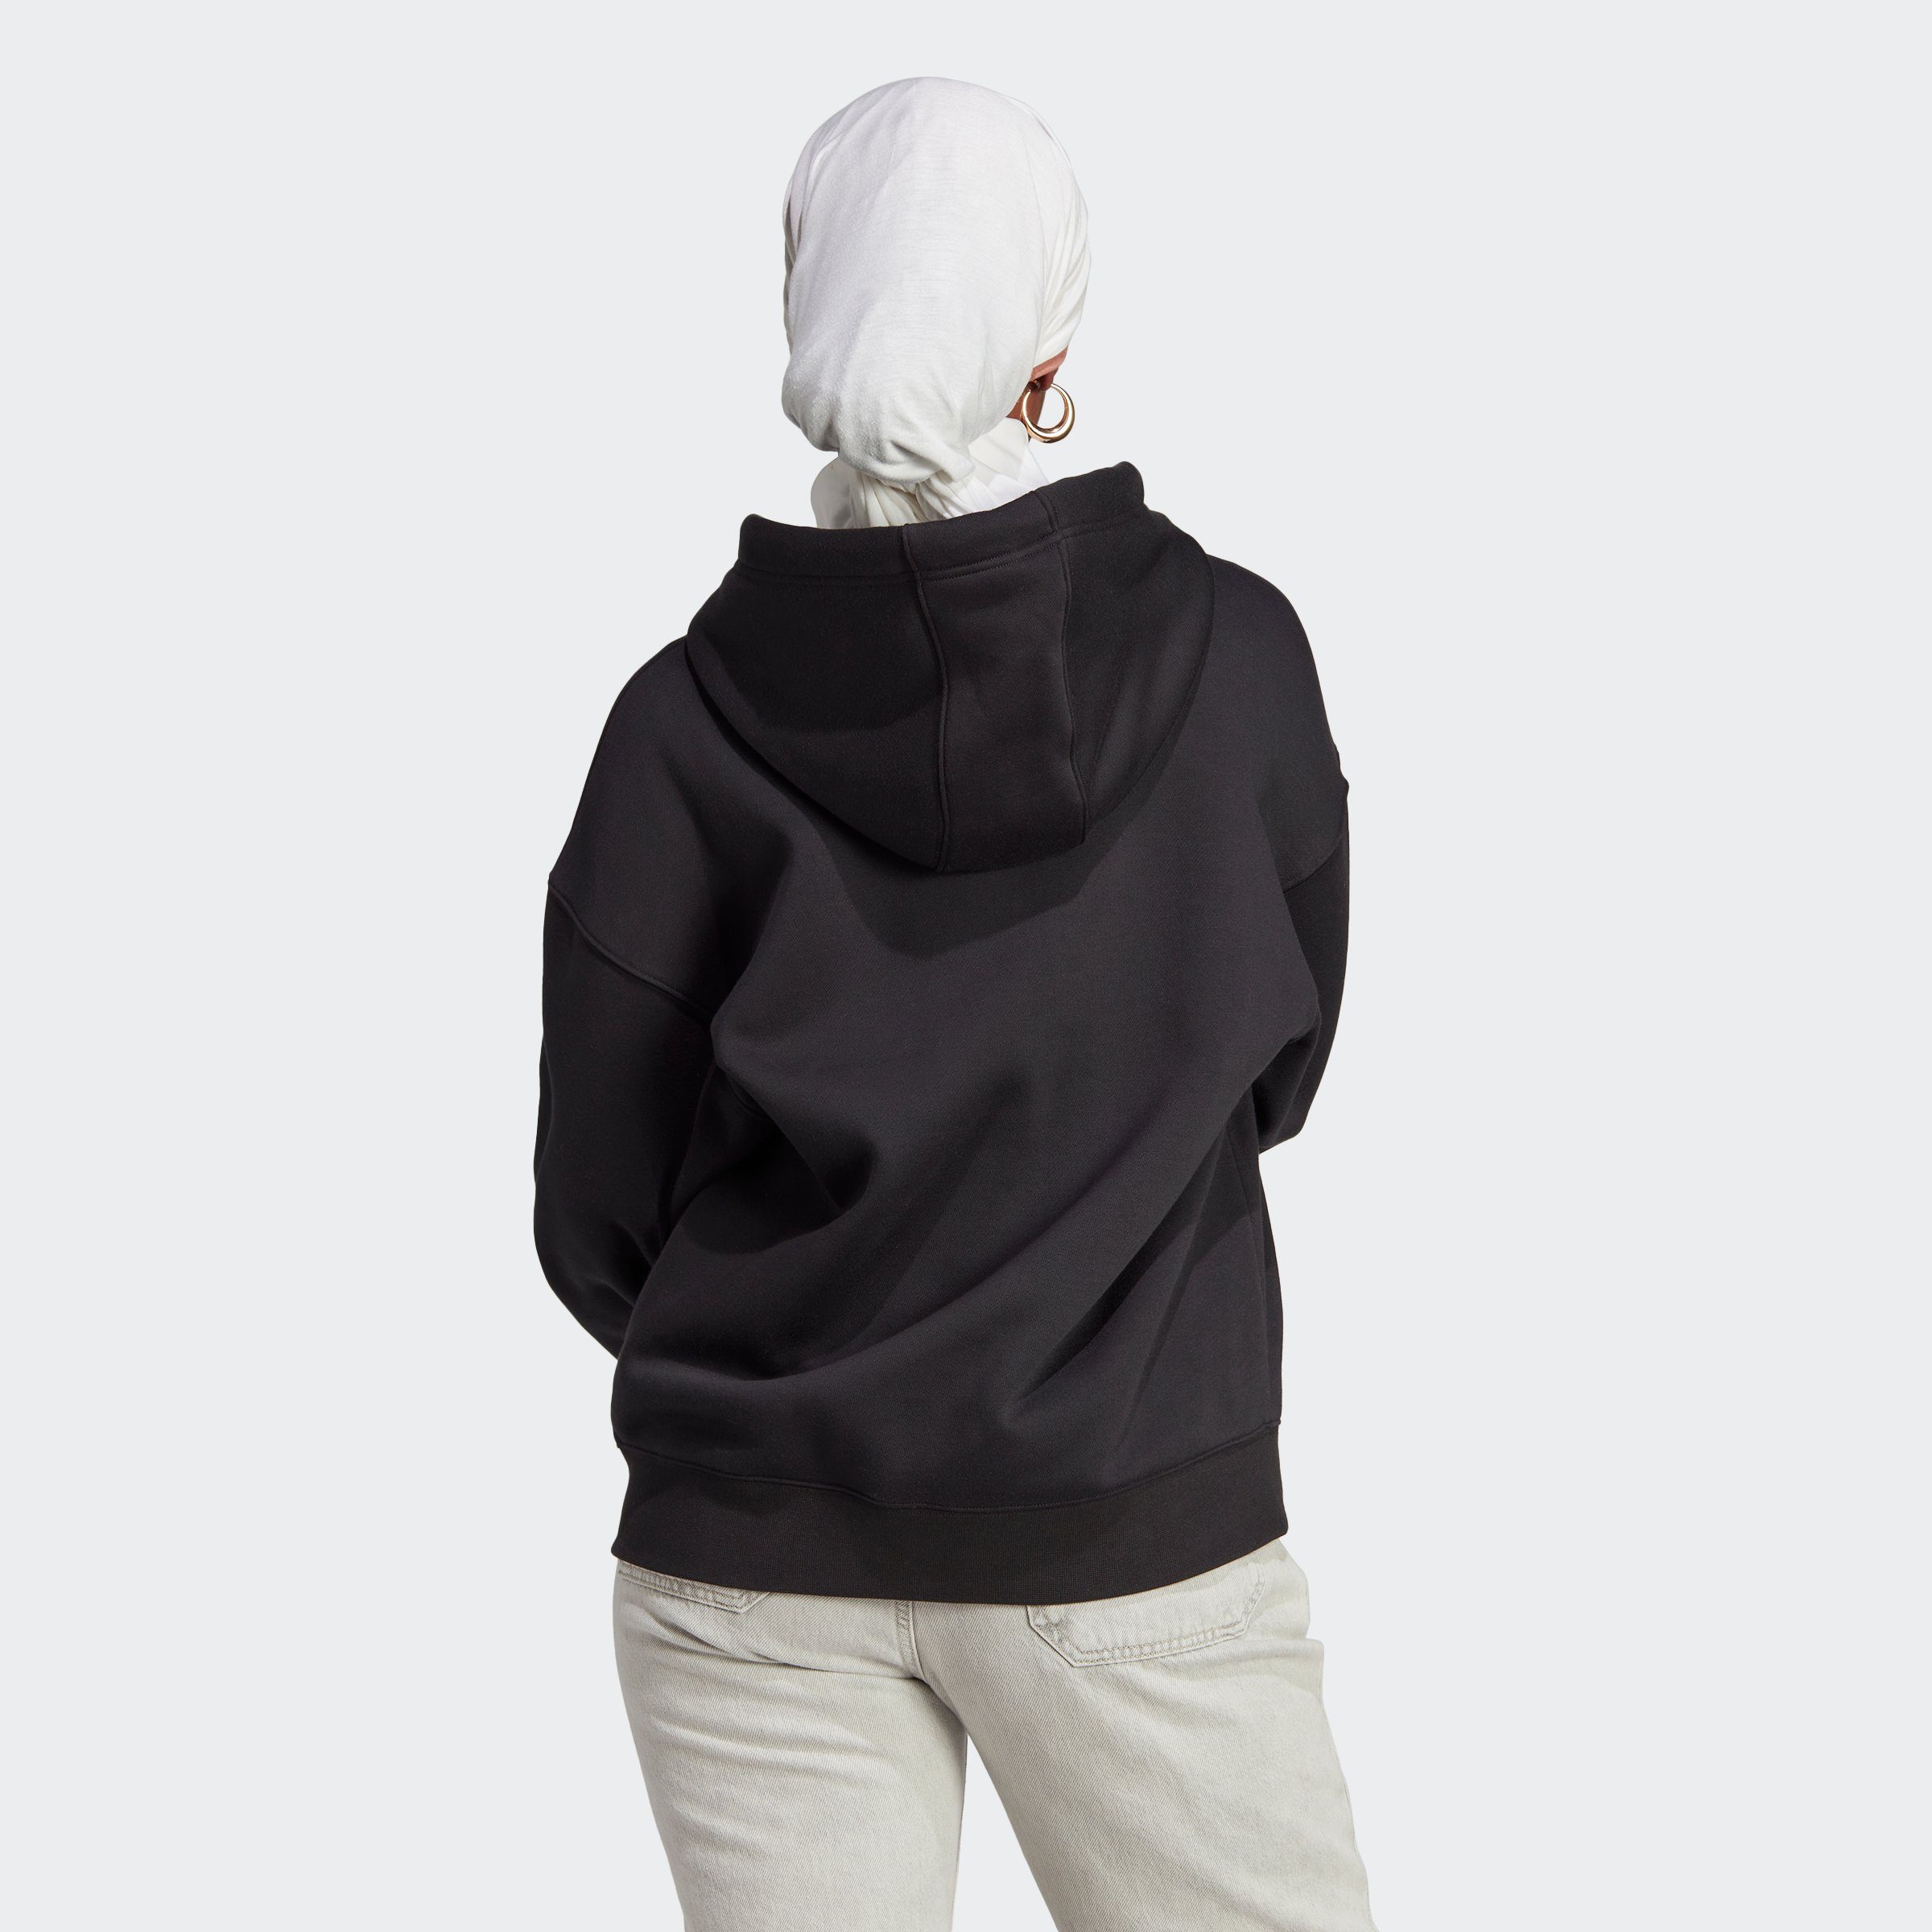 FULL adidas ZIP FLEECE Originals BLACK Sweatshirt